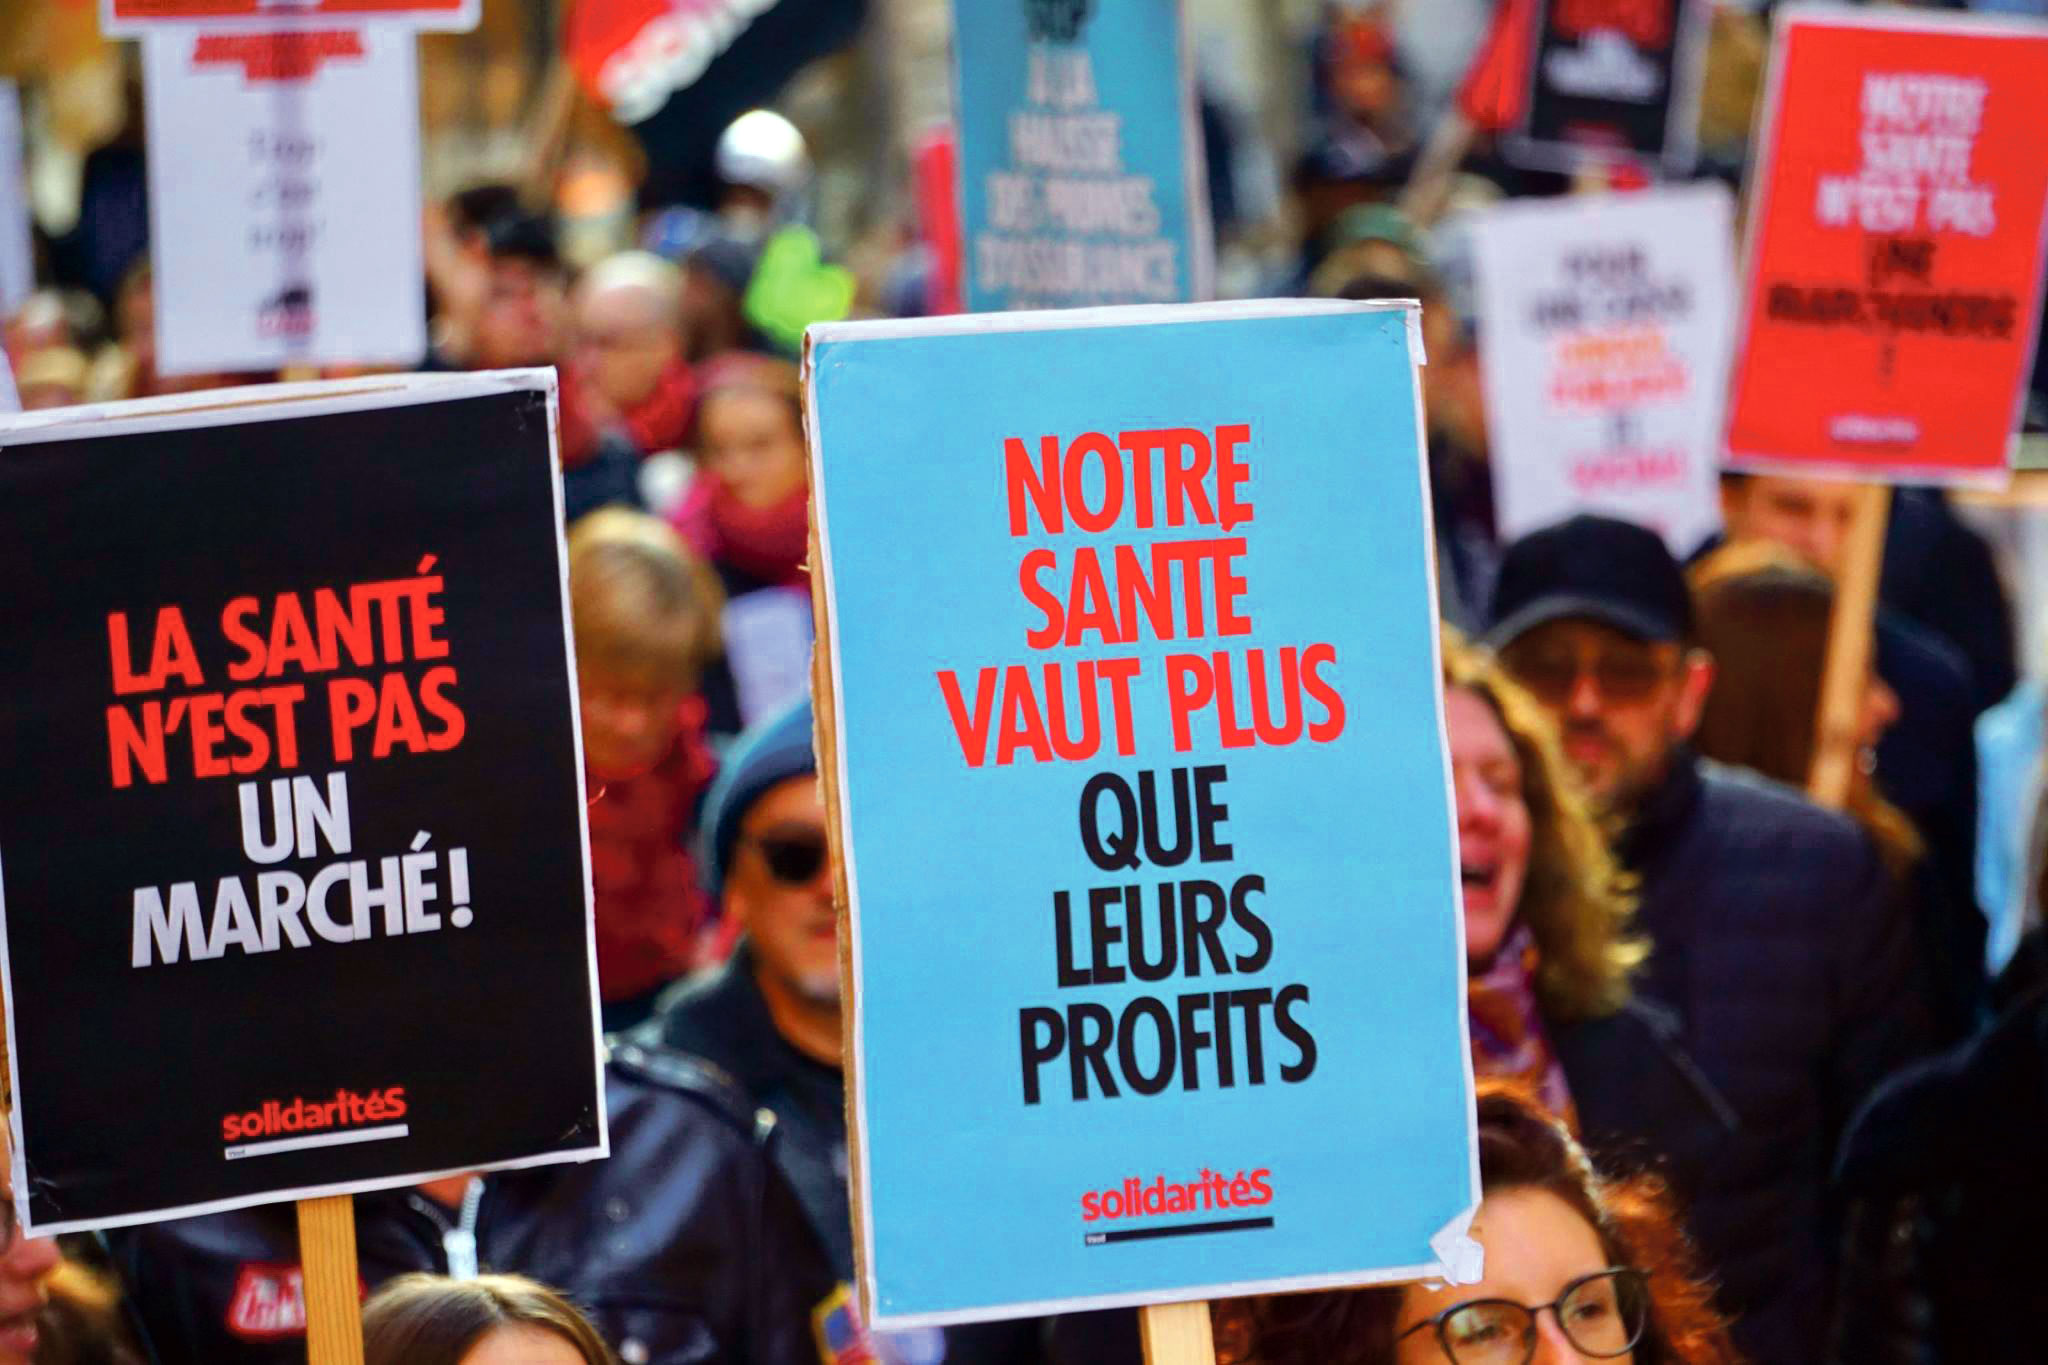 Manifestation contre la hausse des primes, Lausanne, novembre 2018